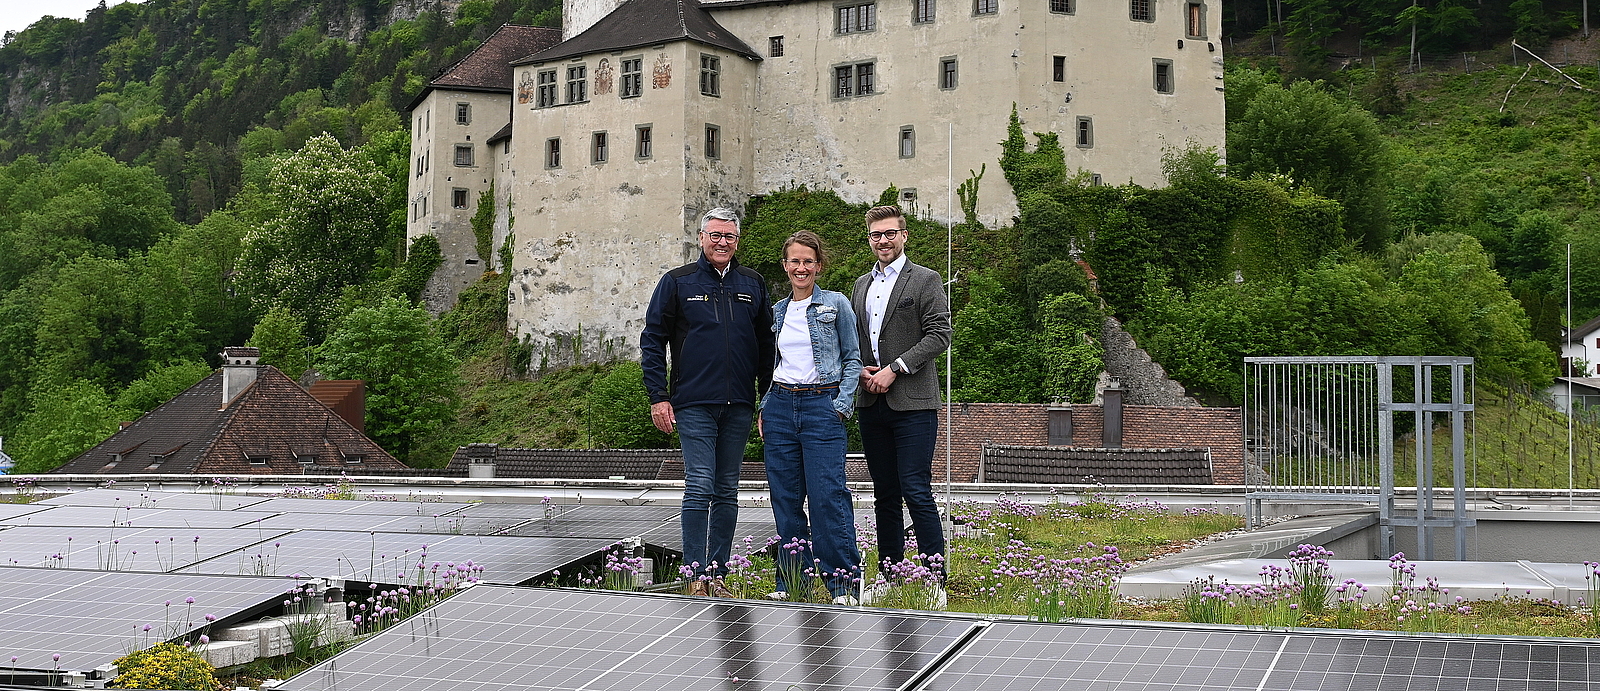 Bürgermeister Wolfgang Matt, Stadtrat Wolfgang Flach und die städtische Mitarbeiterin Christina Connert stehen auf dem Dach des Montforthauses. Hinter ihnen ist die Schattenburg zu sehen. 